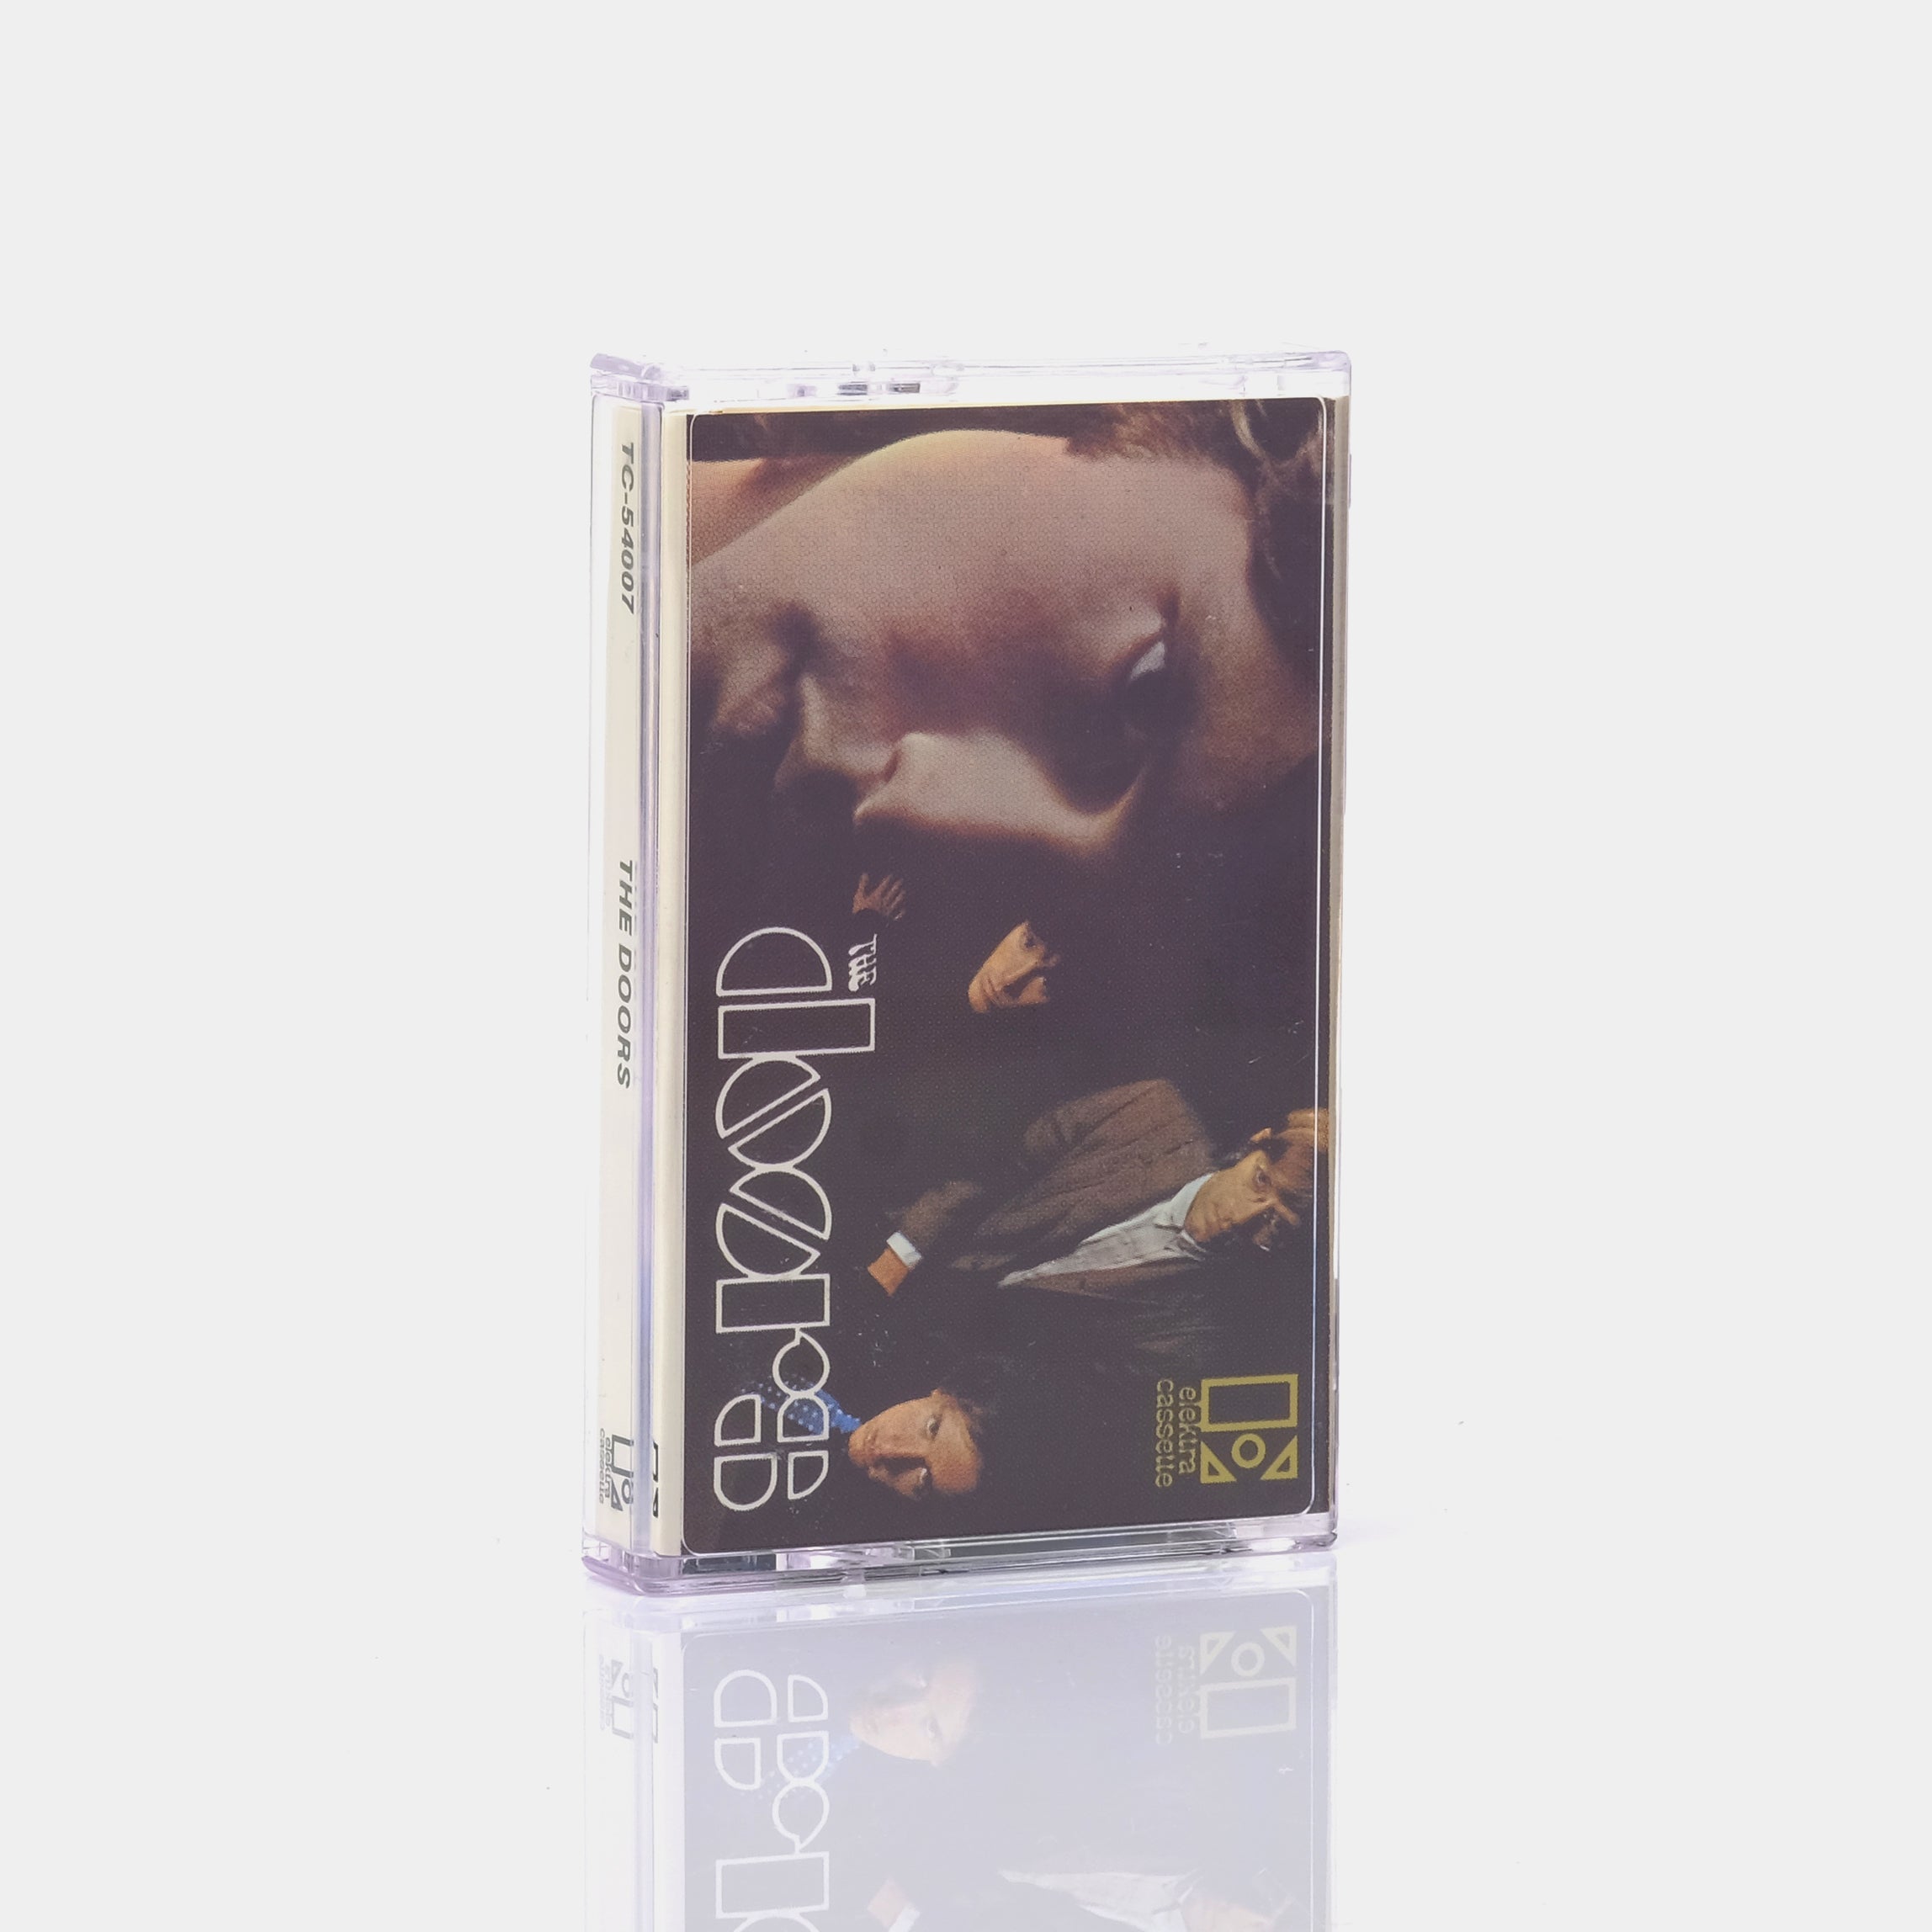 The Doors - The Doors Cassette Tape